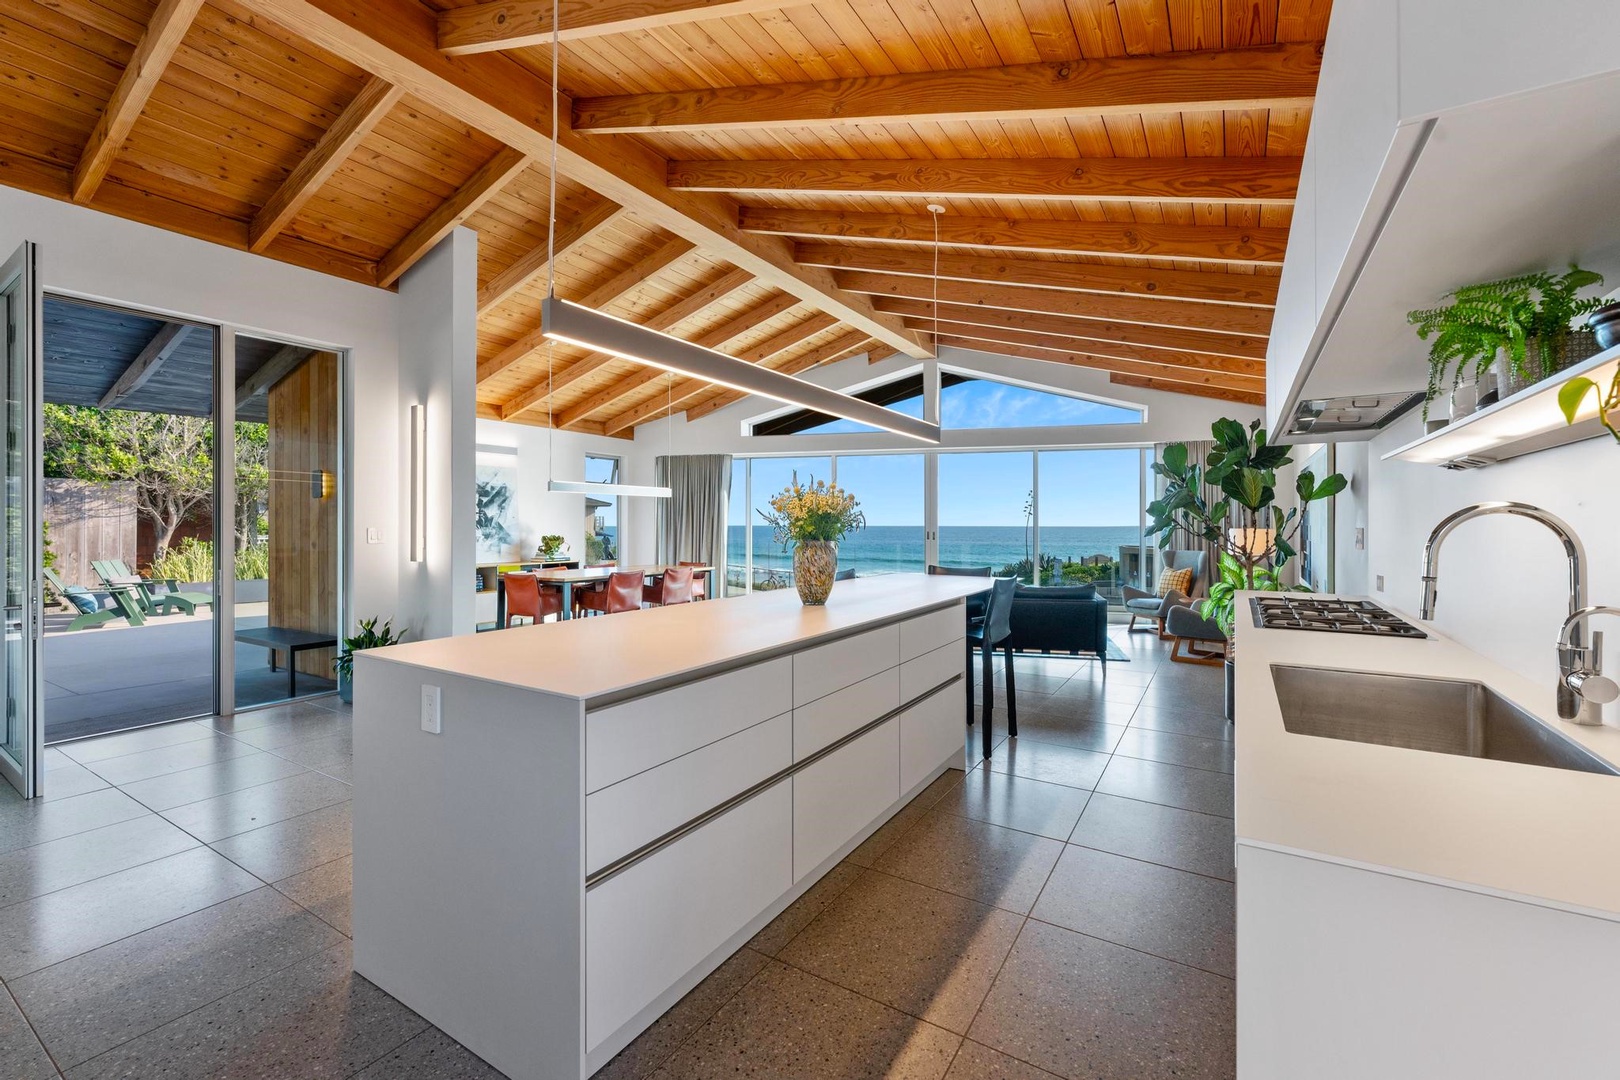 Modern kitchen with views